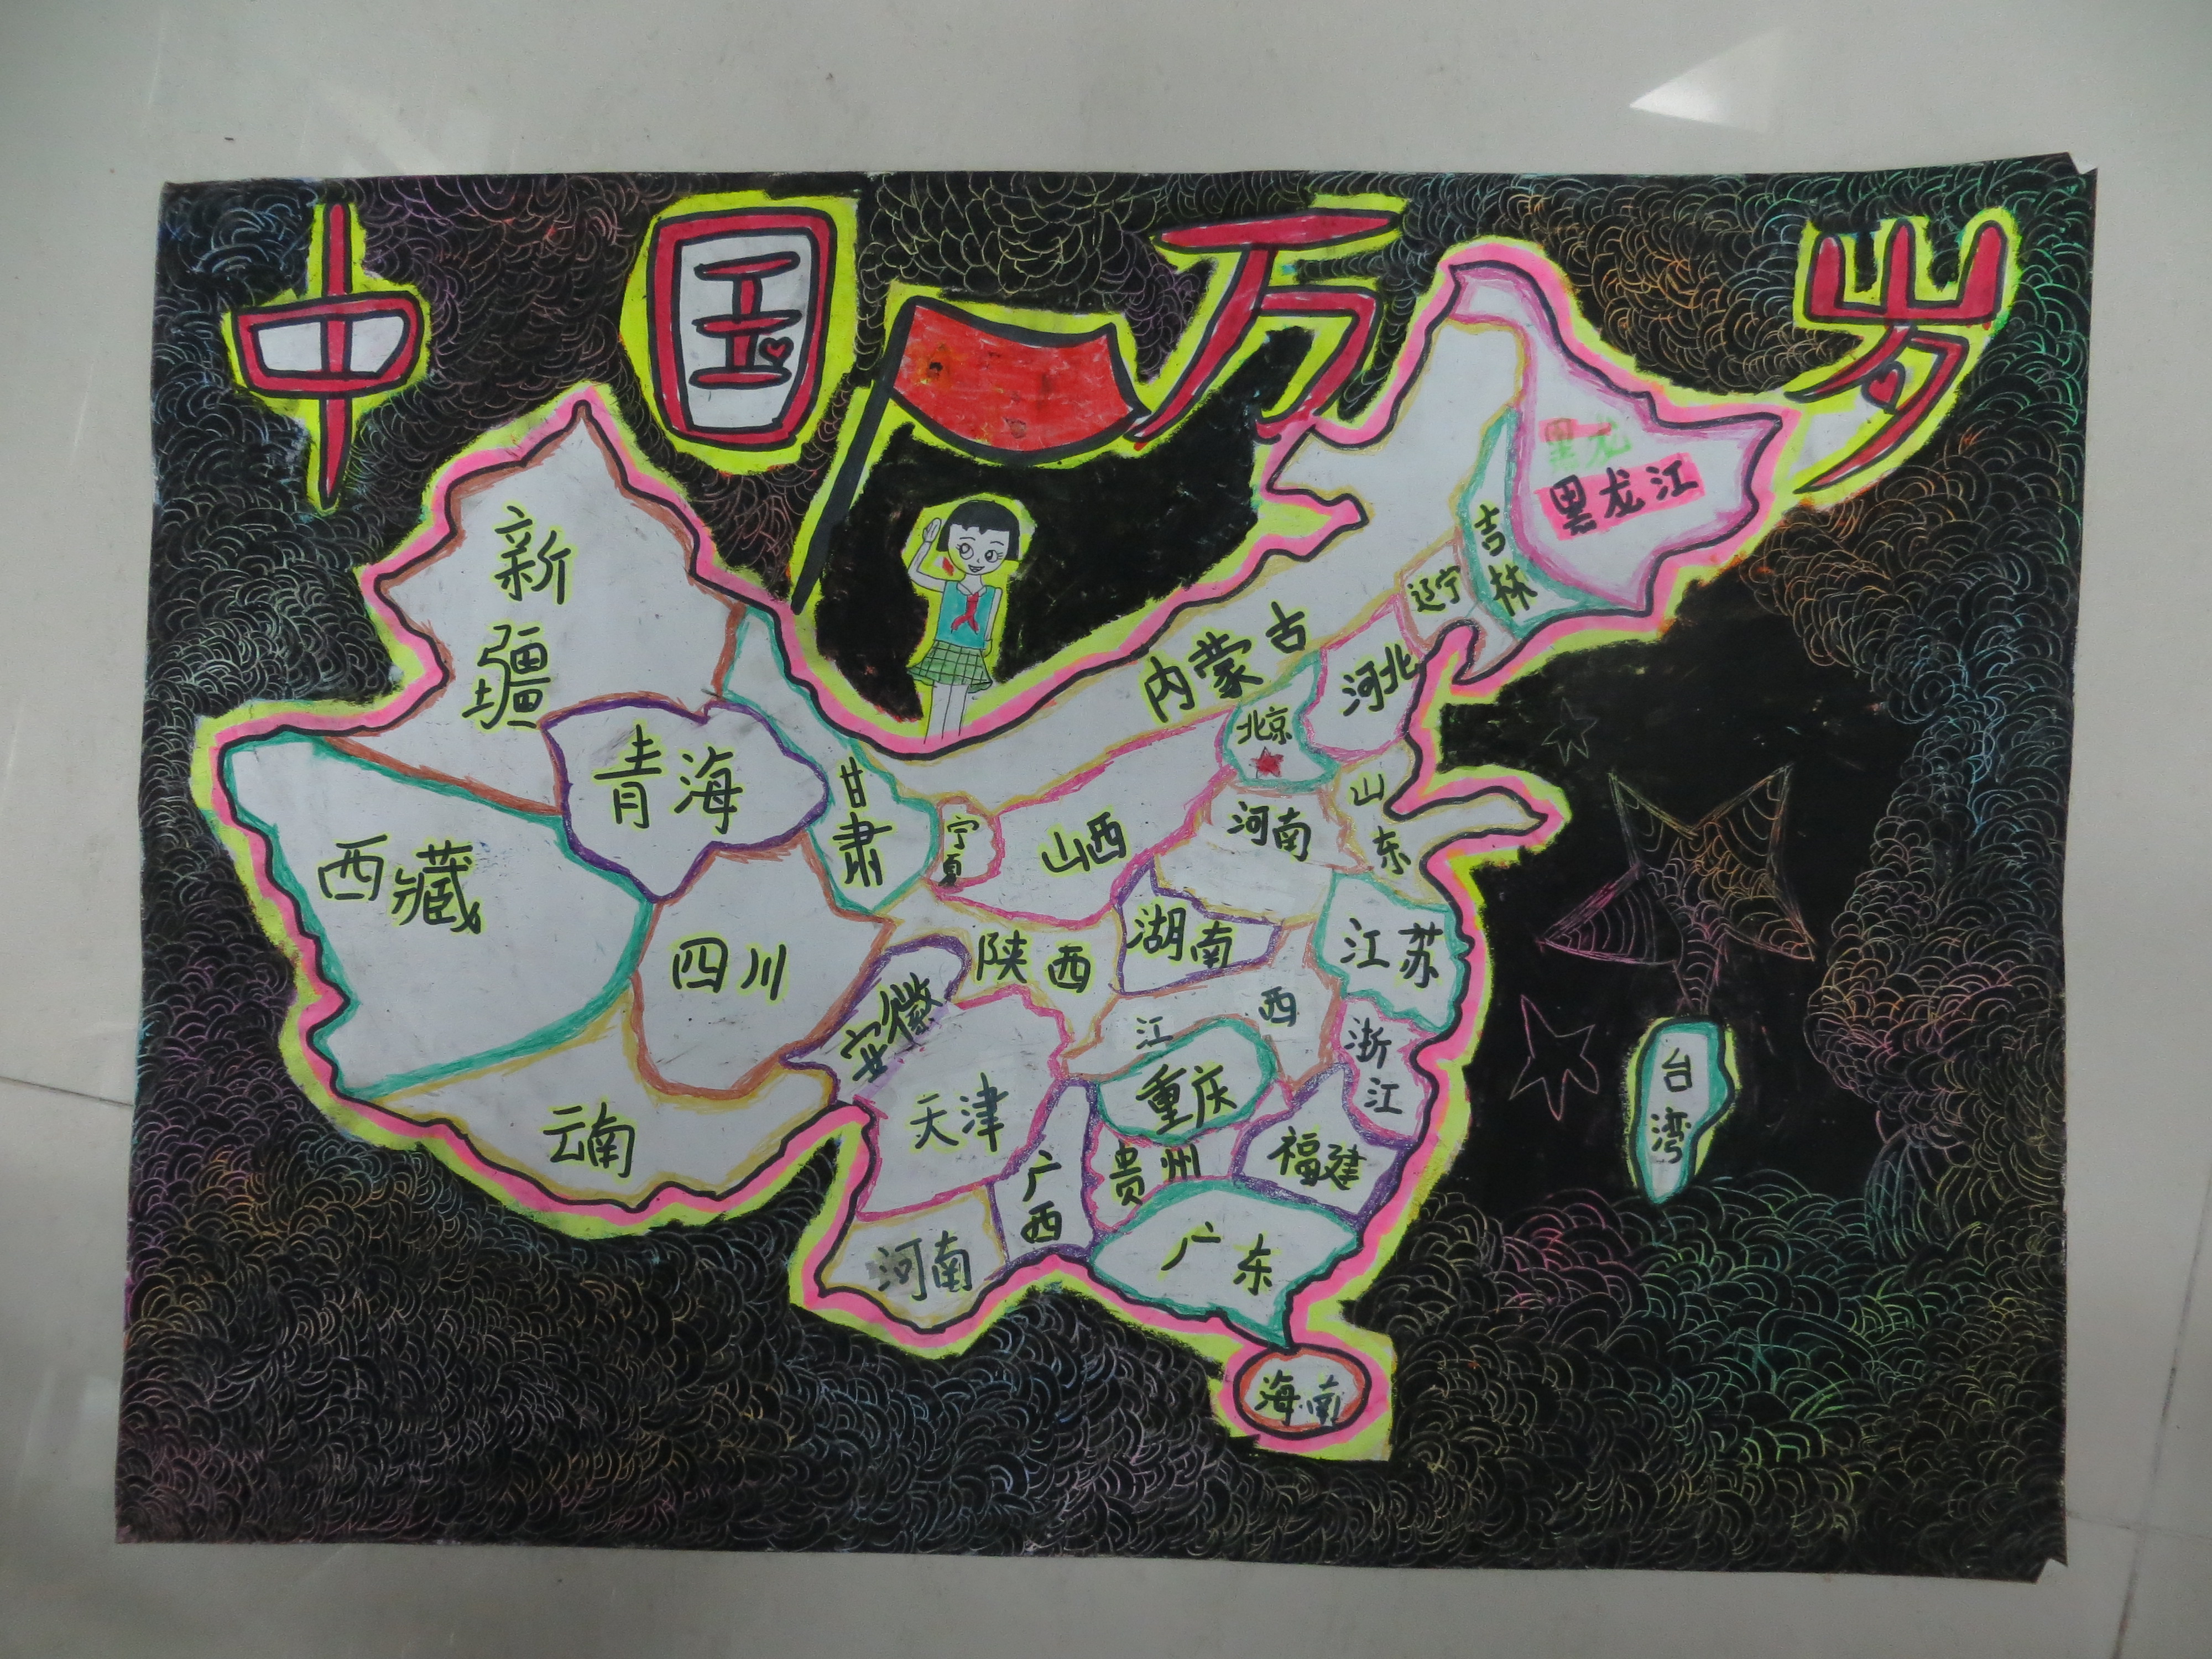 泉州师院附小"美丽中国"国家版图少儿手绘地图比赛图片